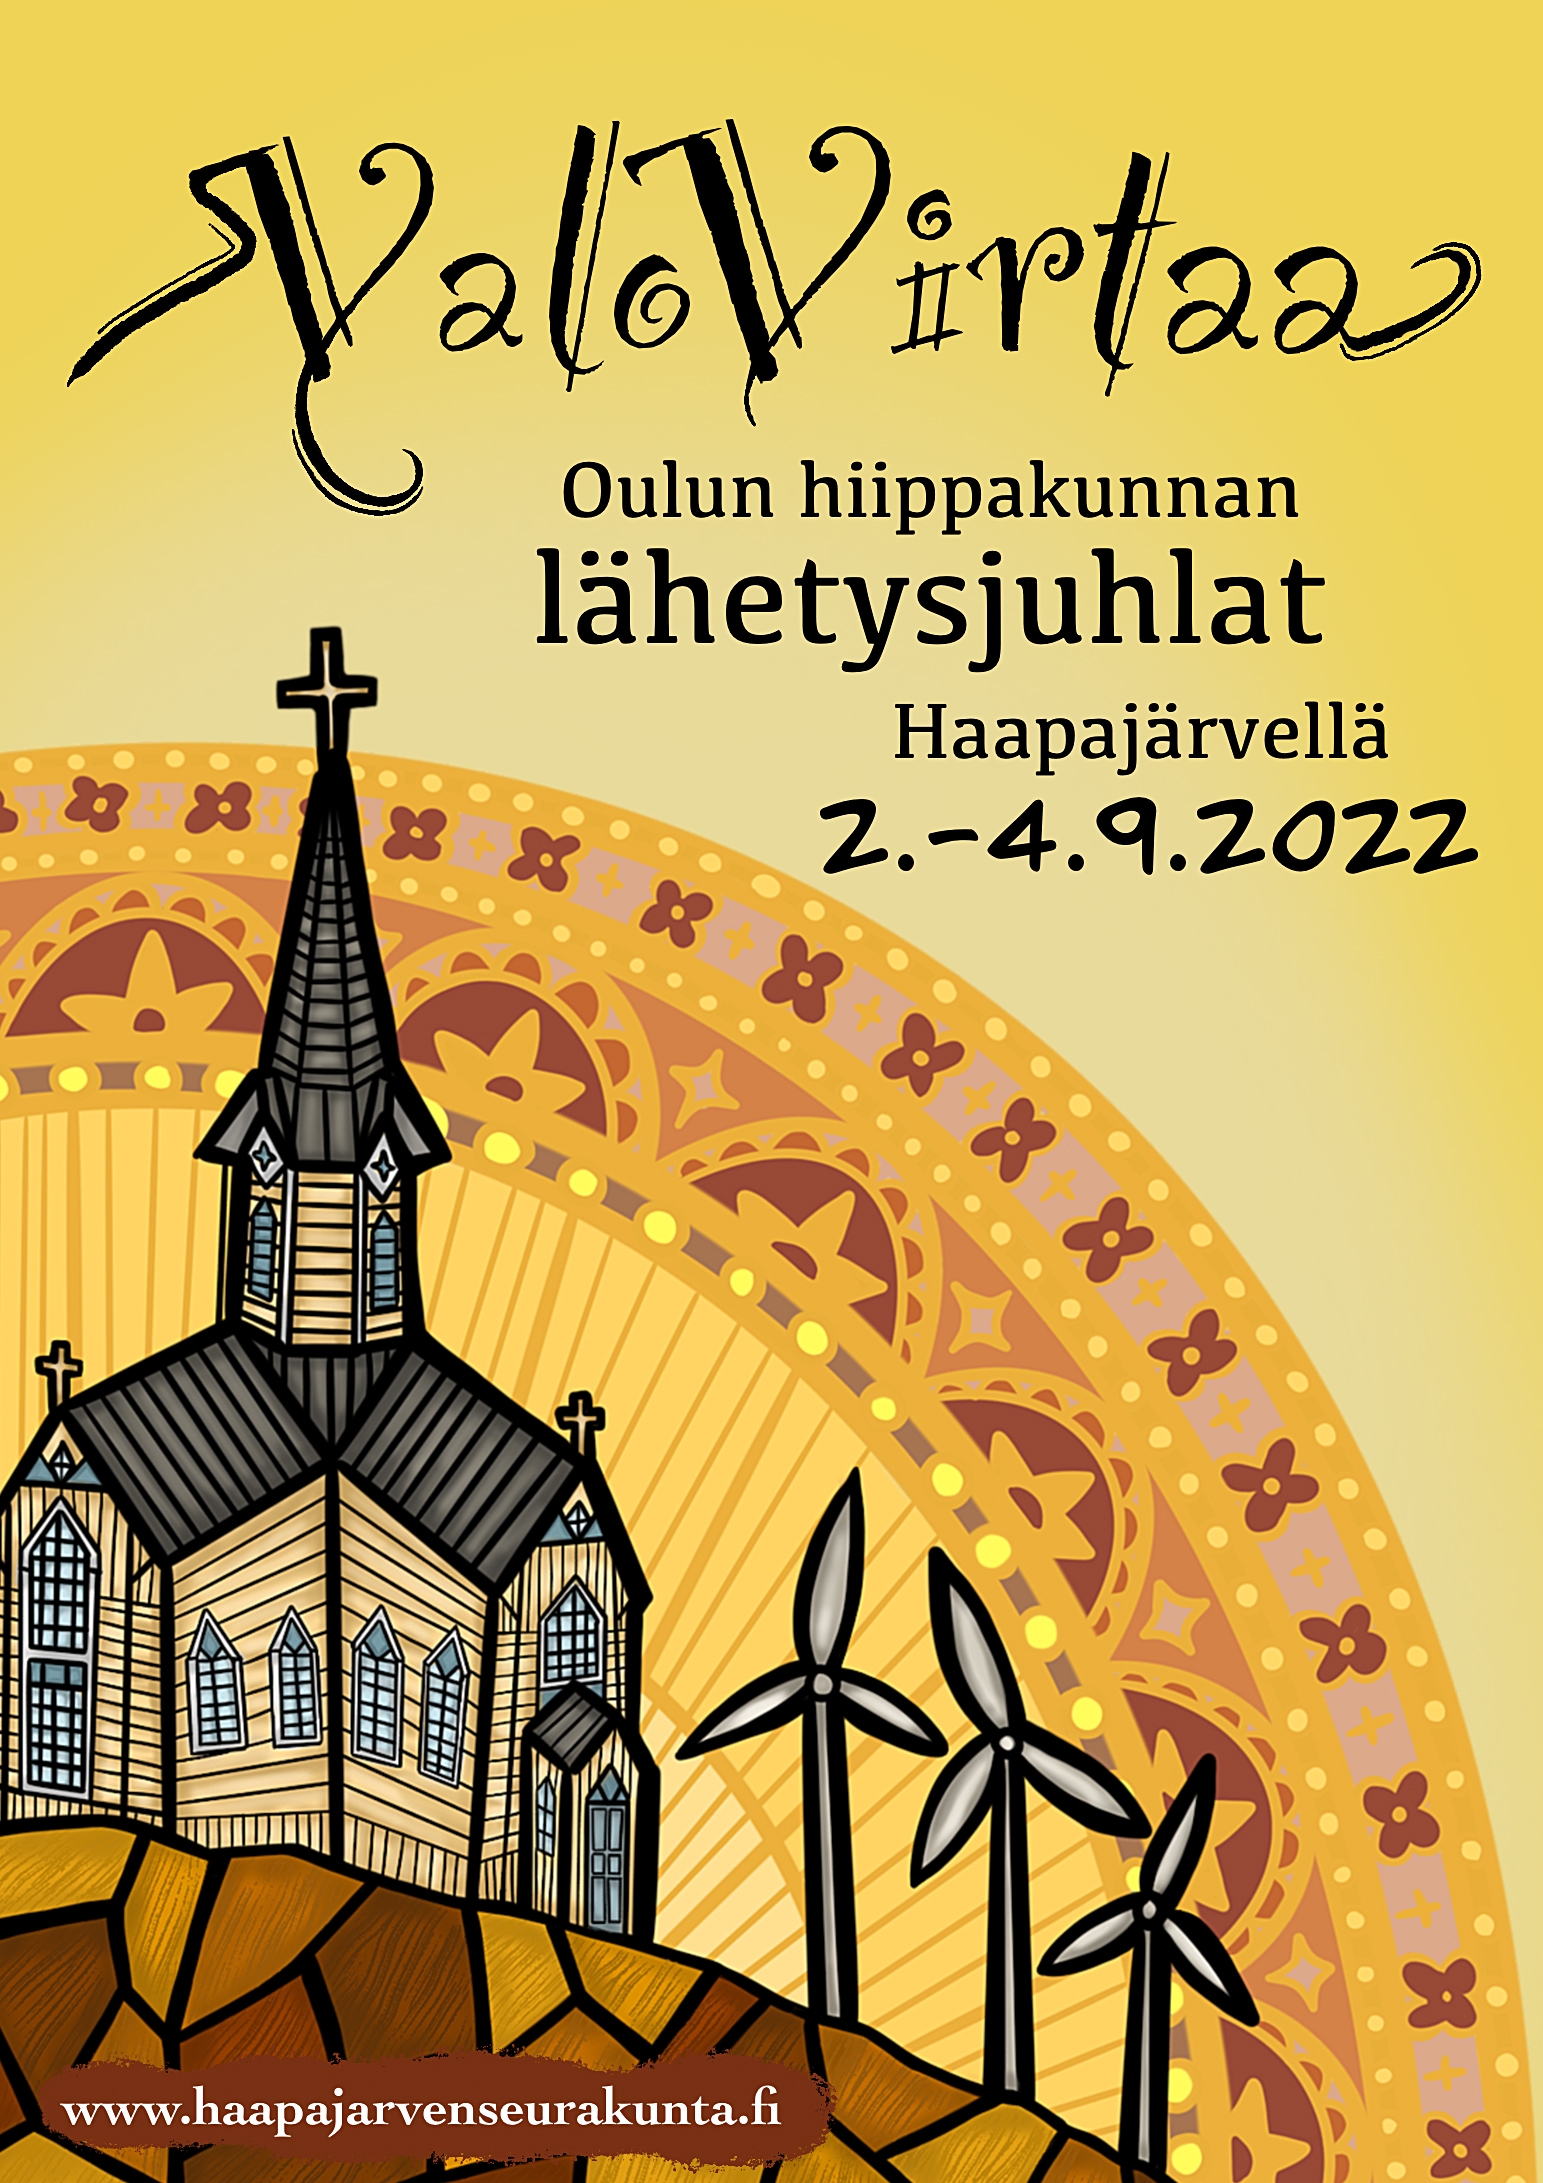 Hiippakunnan lähetysjuhlien juliste, kuvassa piirretty Haapajärven kirkko